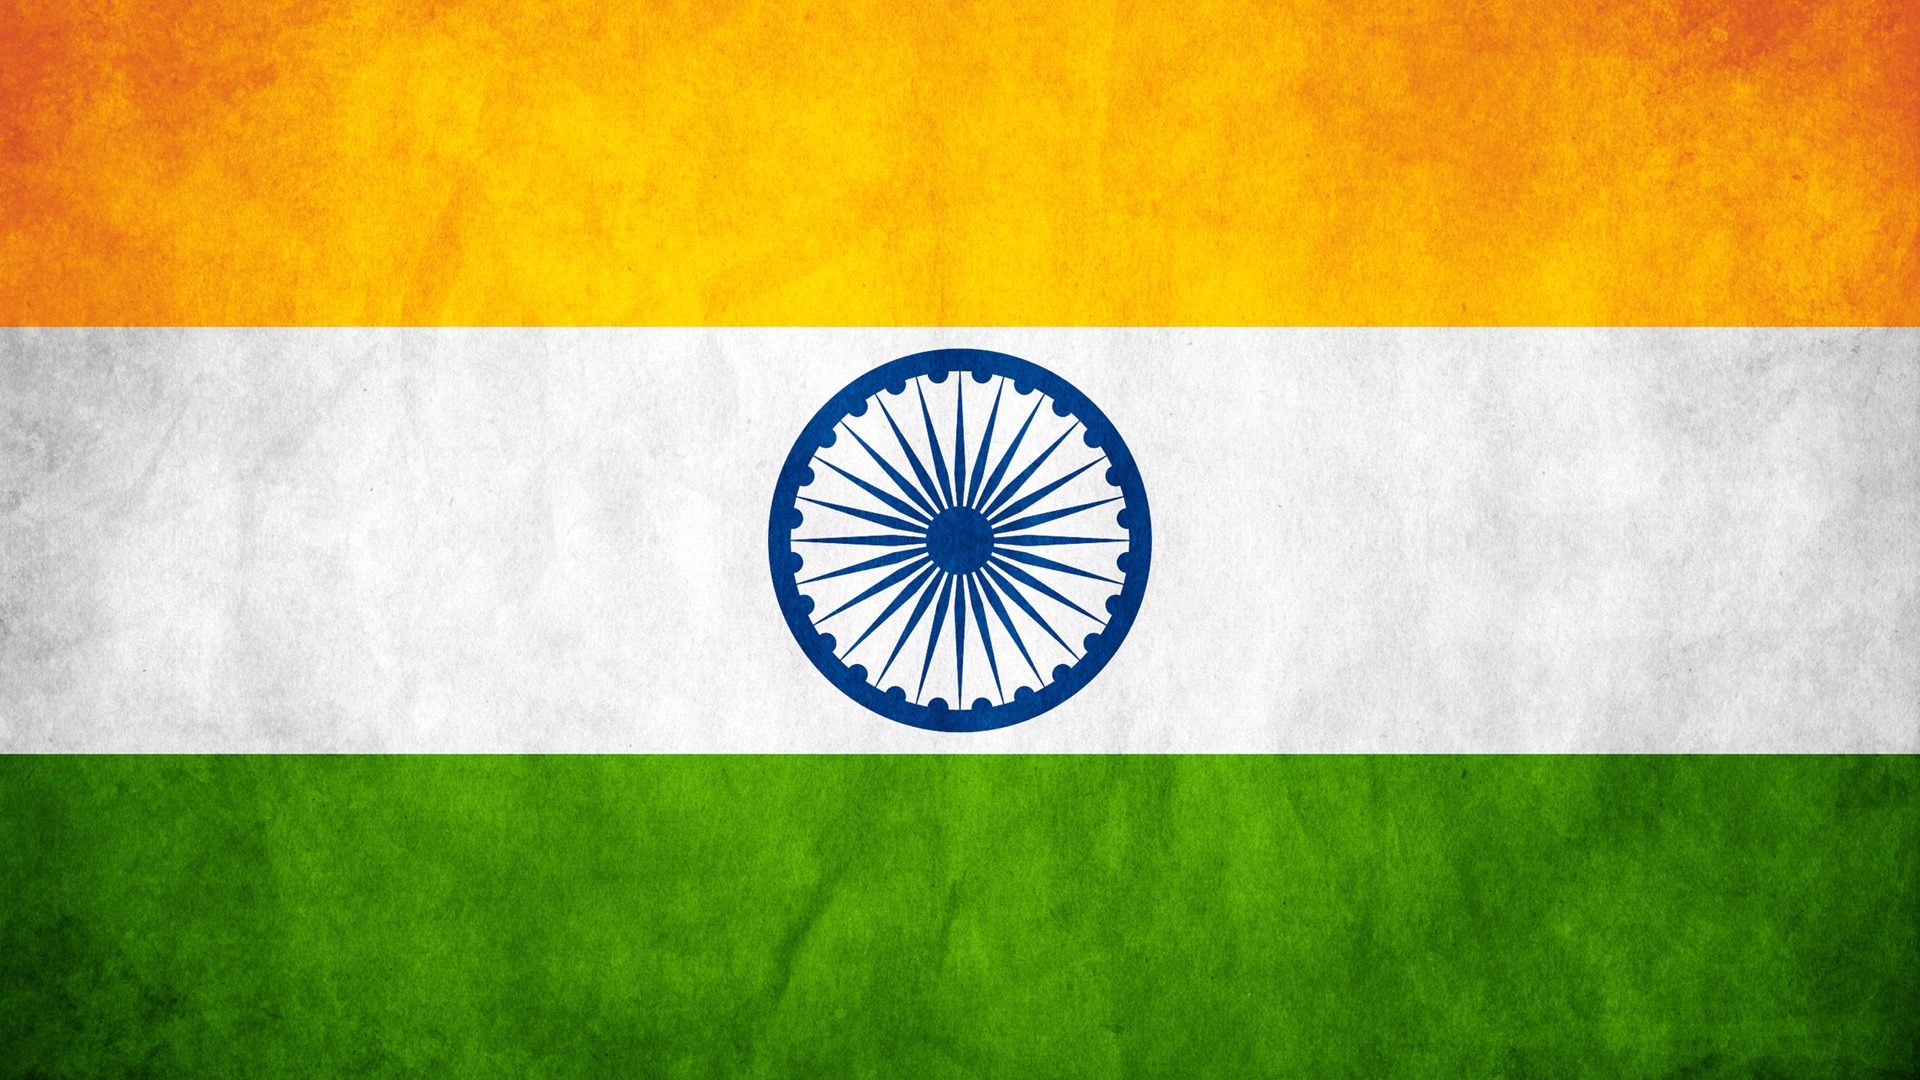 drapeau indien jour de la république fond d'écran,drapeau,police de caractère,ciel,cercle,paysage